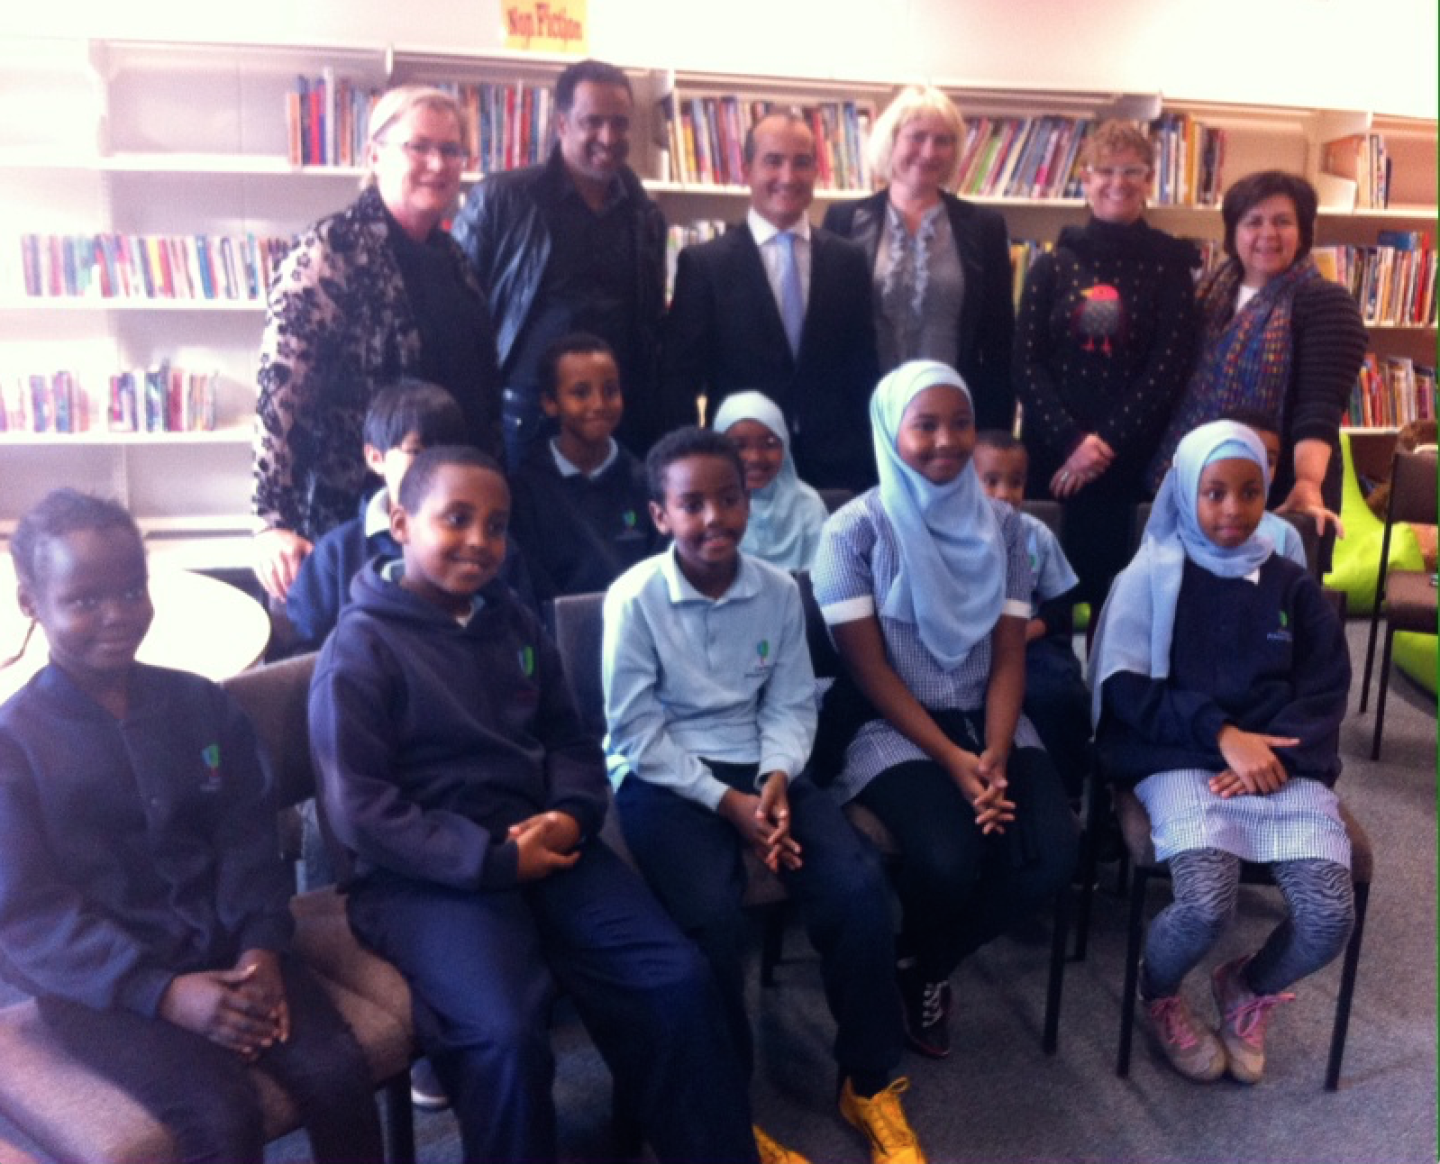 School council, junior school council, principal, and staff meet the Hon James Merlino at Carlton Primary School.